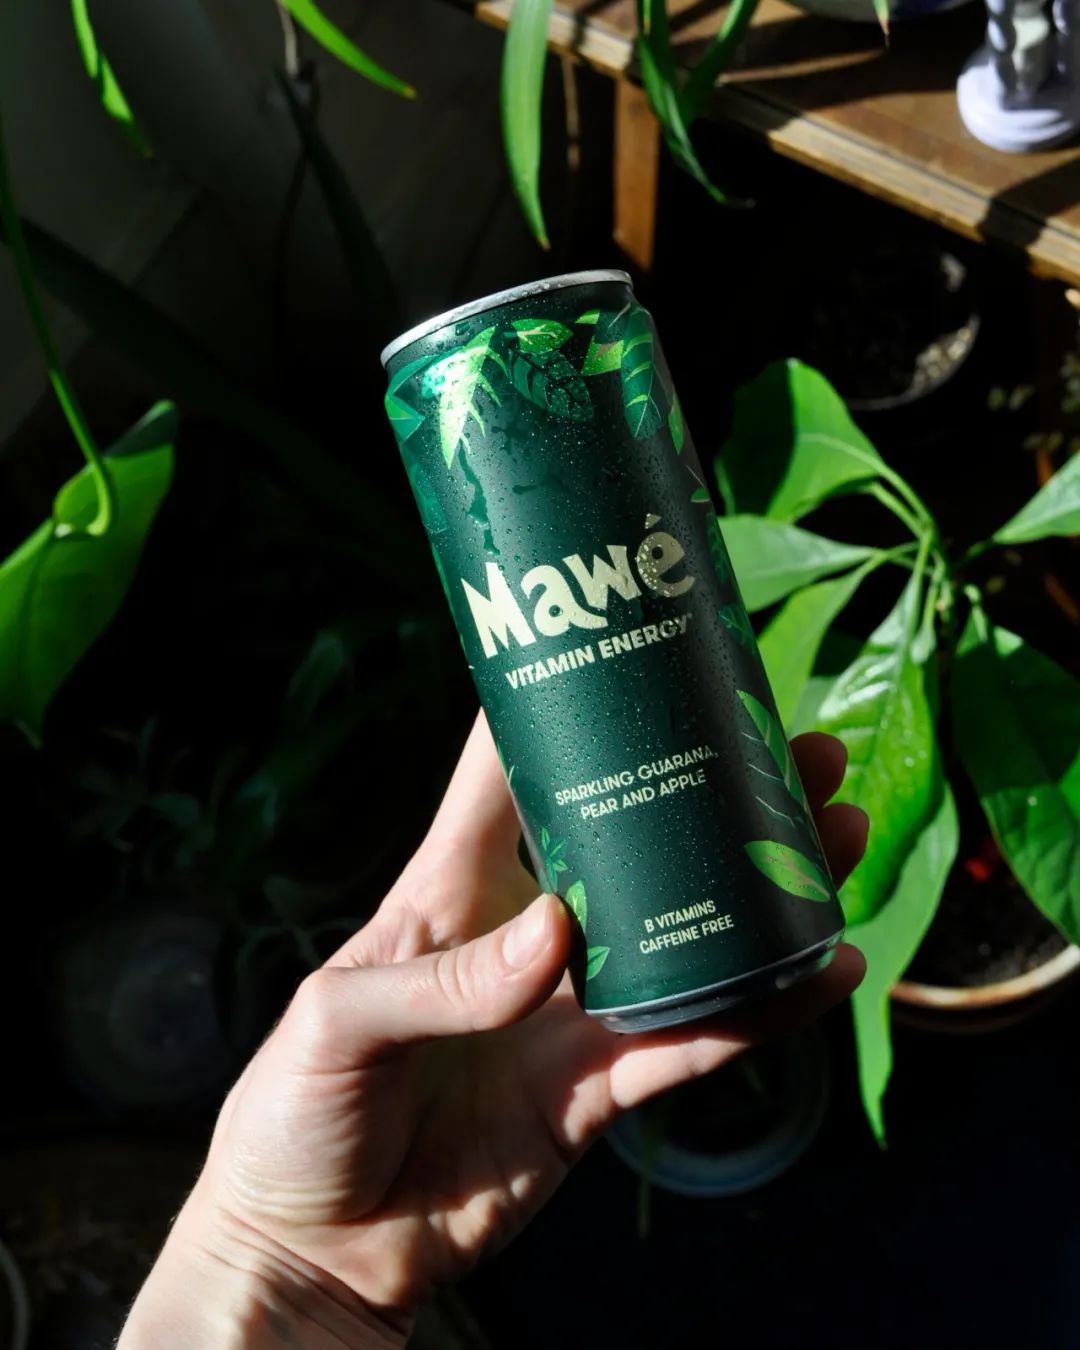 Mawé是ZX Ventures 在欧洲推出的能量饮料